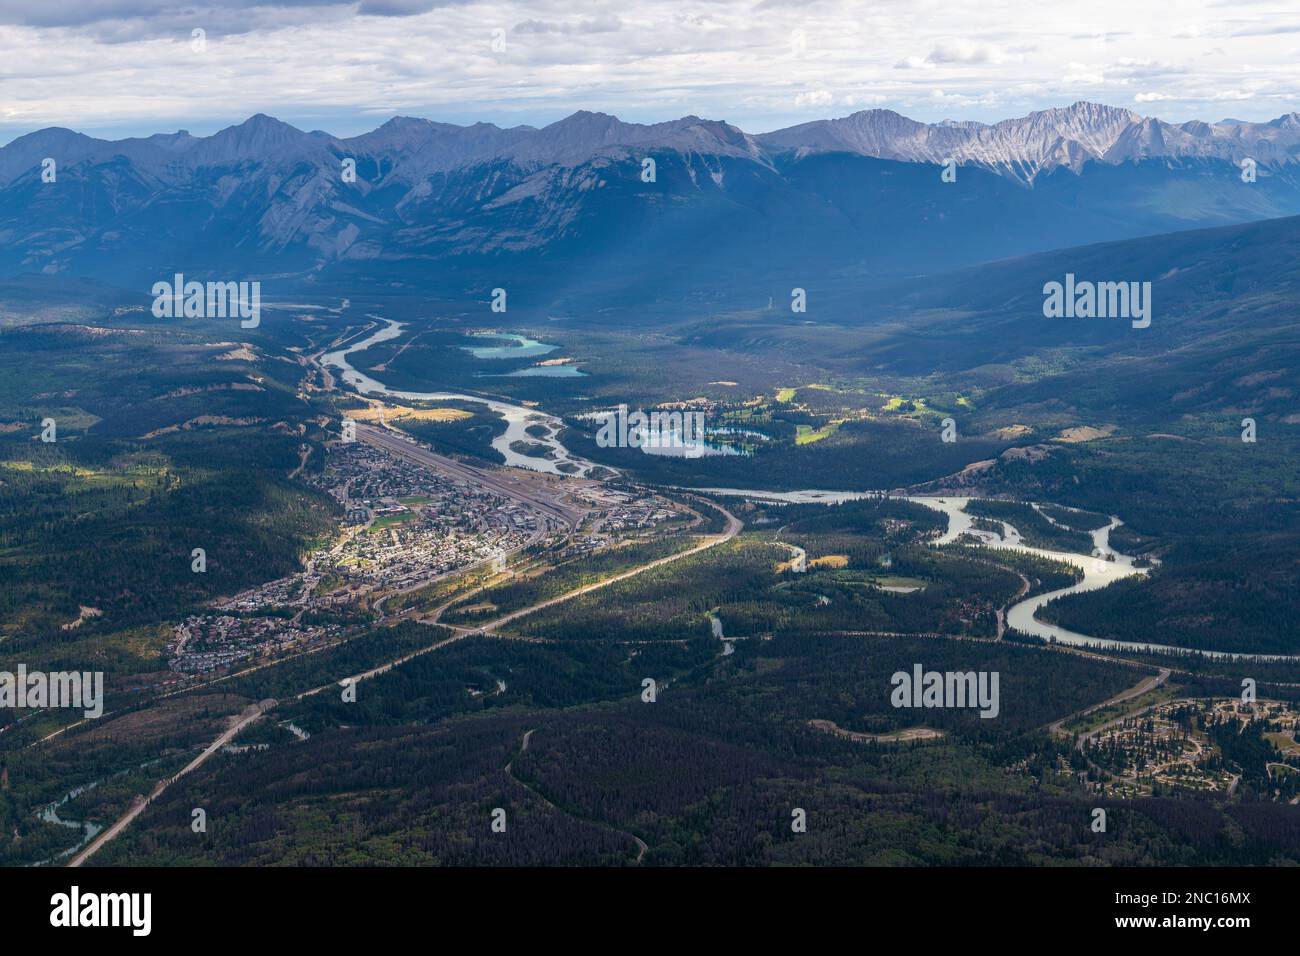 Jasper Stadt und Athabasca Flusslandschaft mit kanadischen rockies vom Whistlers Mountain aus gesehen, Jasper National Park, British Columbia, Kanada. Stockfoto